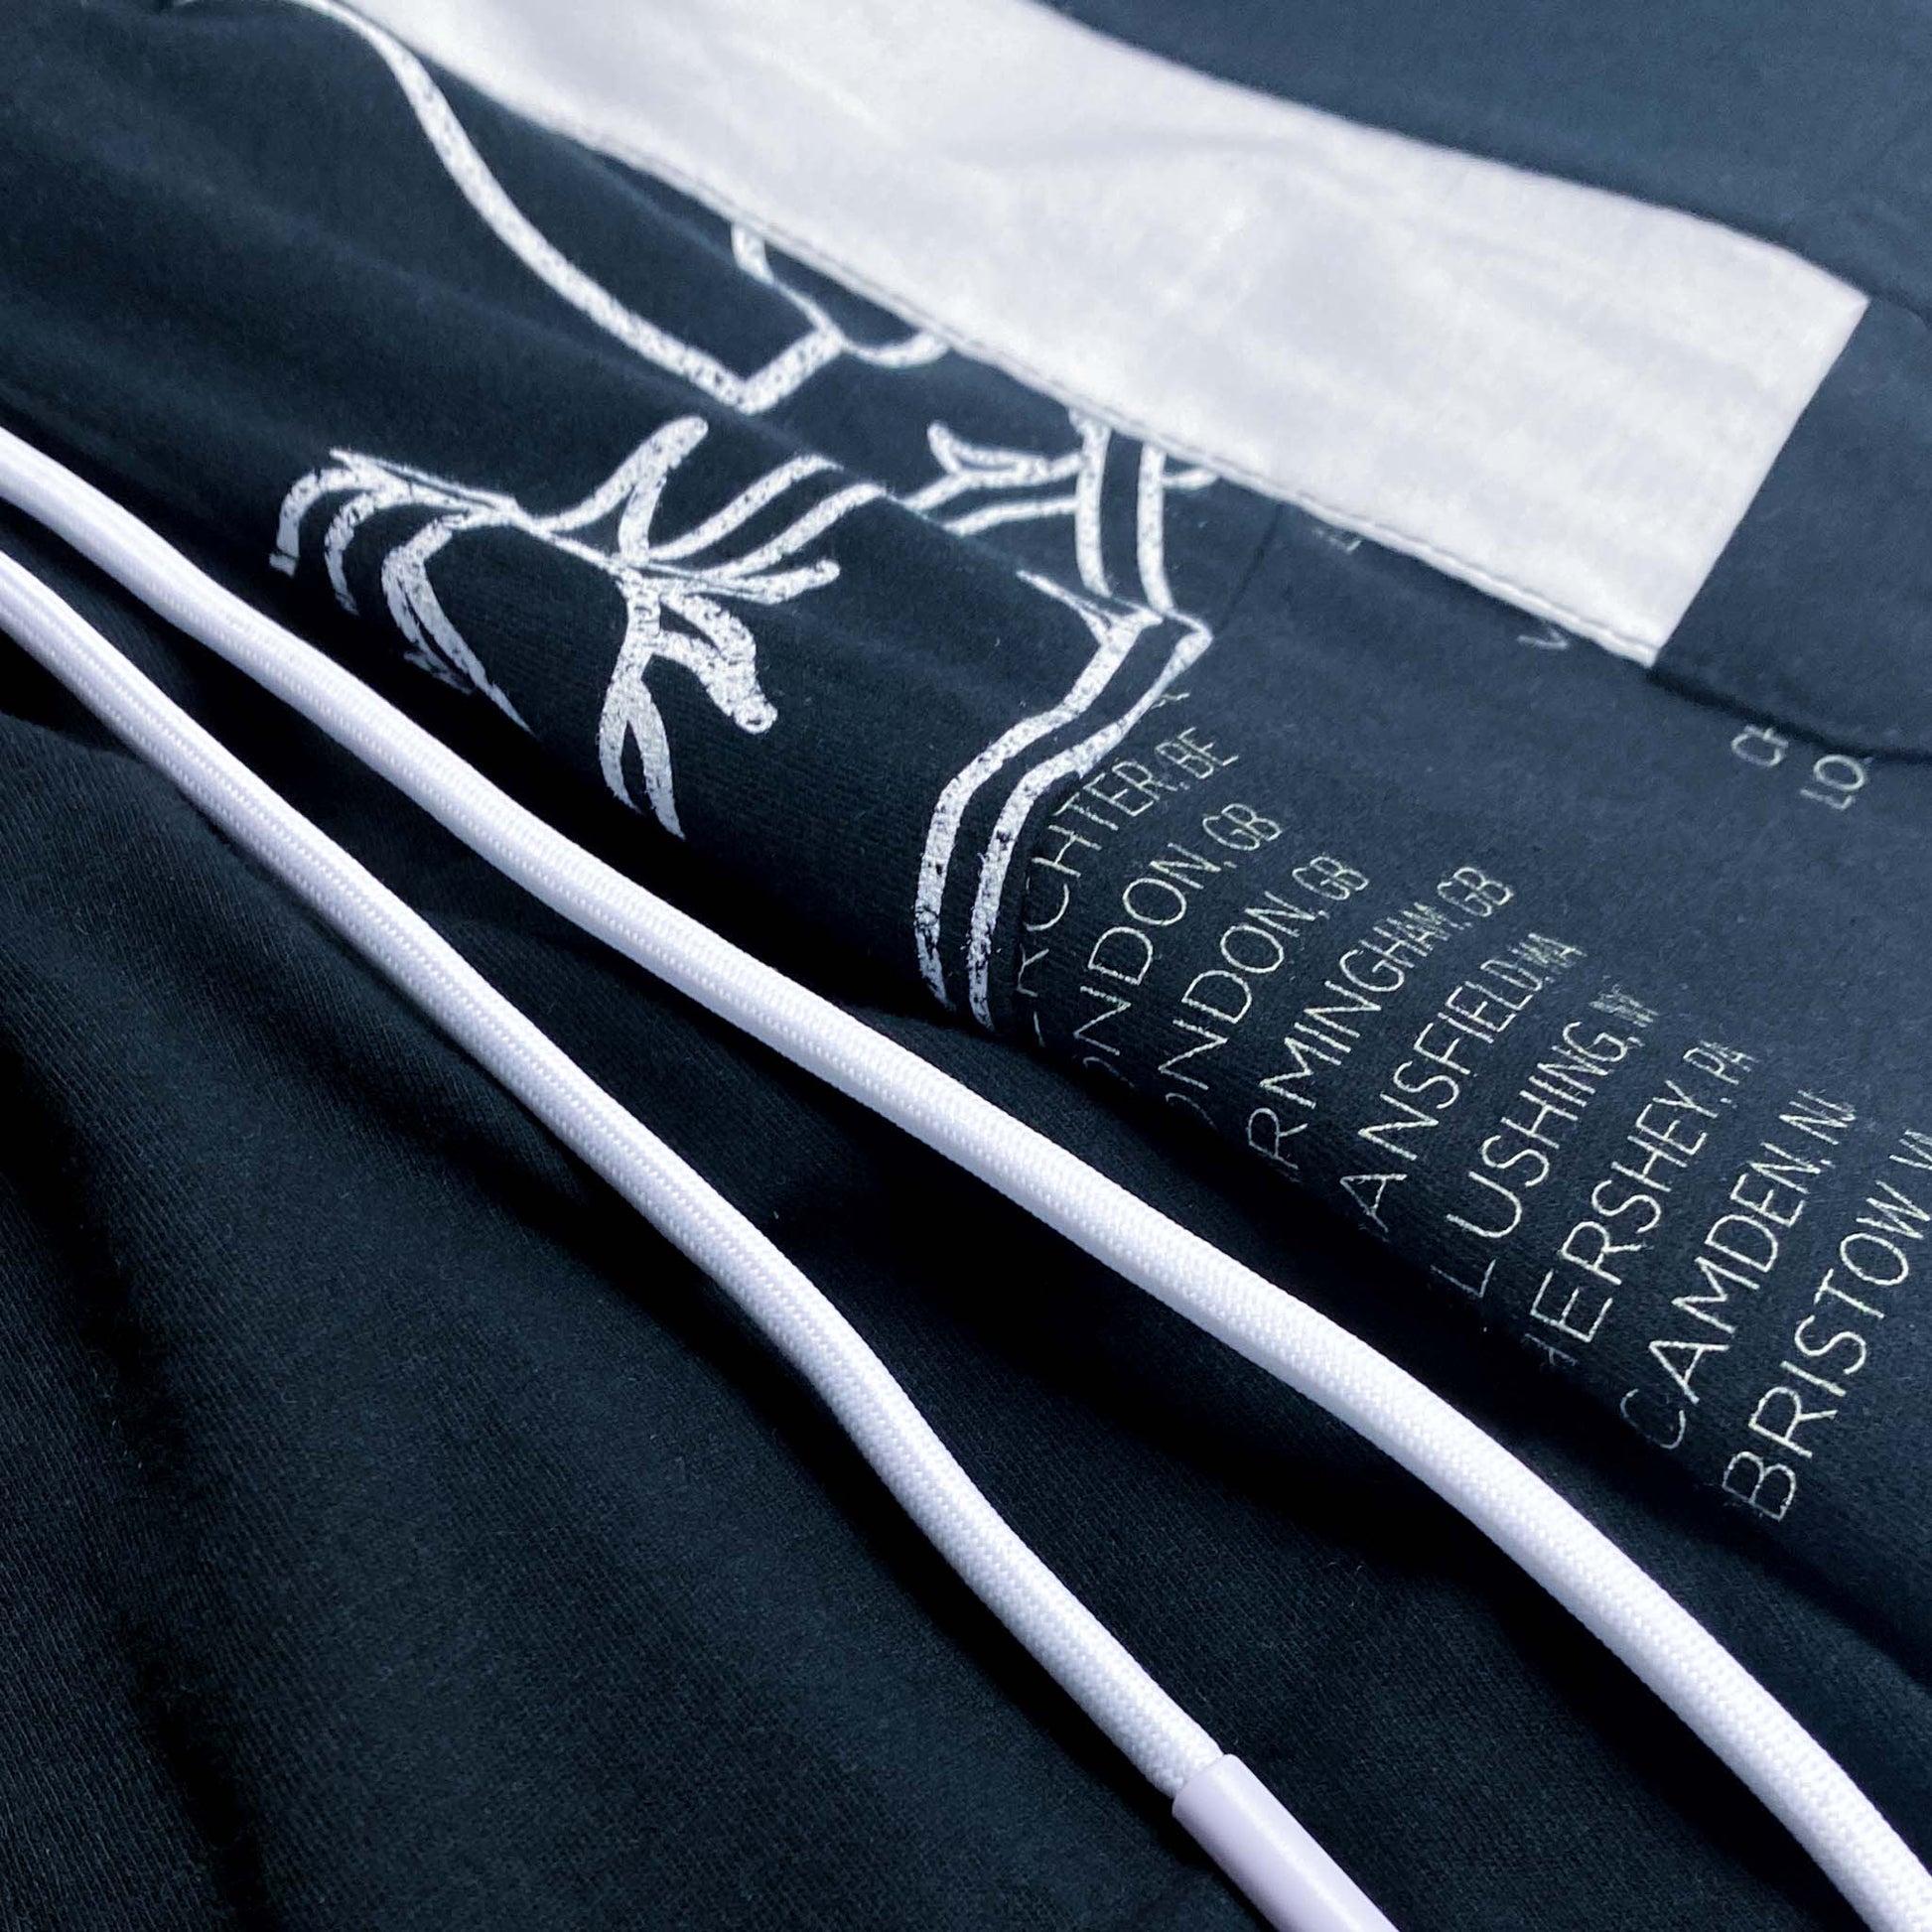 LINKIN PARK x rcnstrct studio FABRIC CUTS B&W Pants Design Details